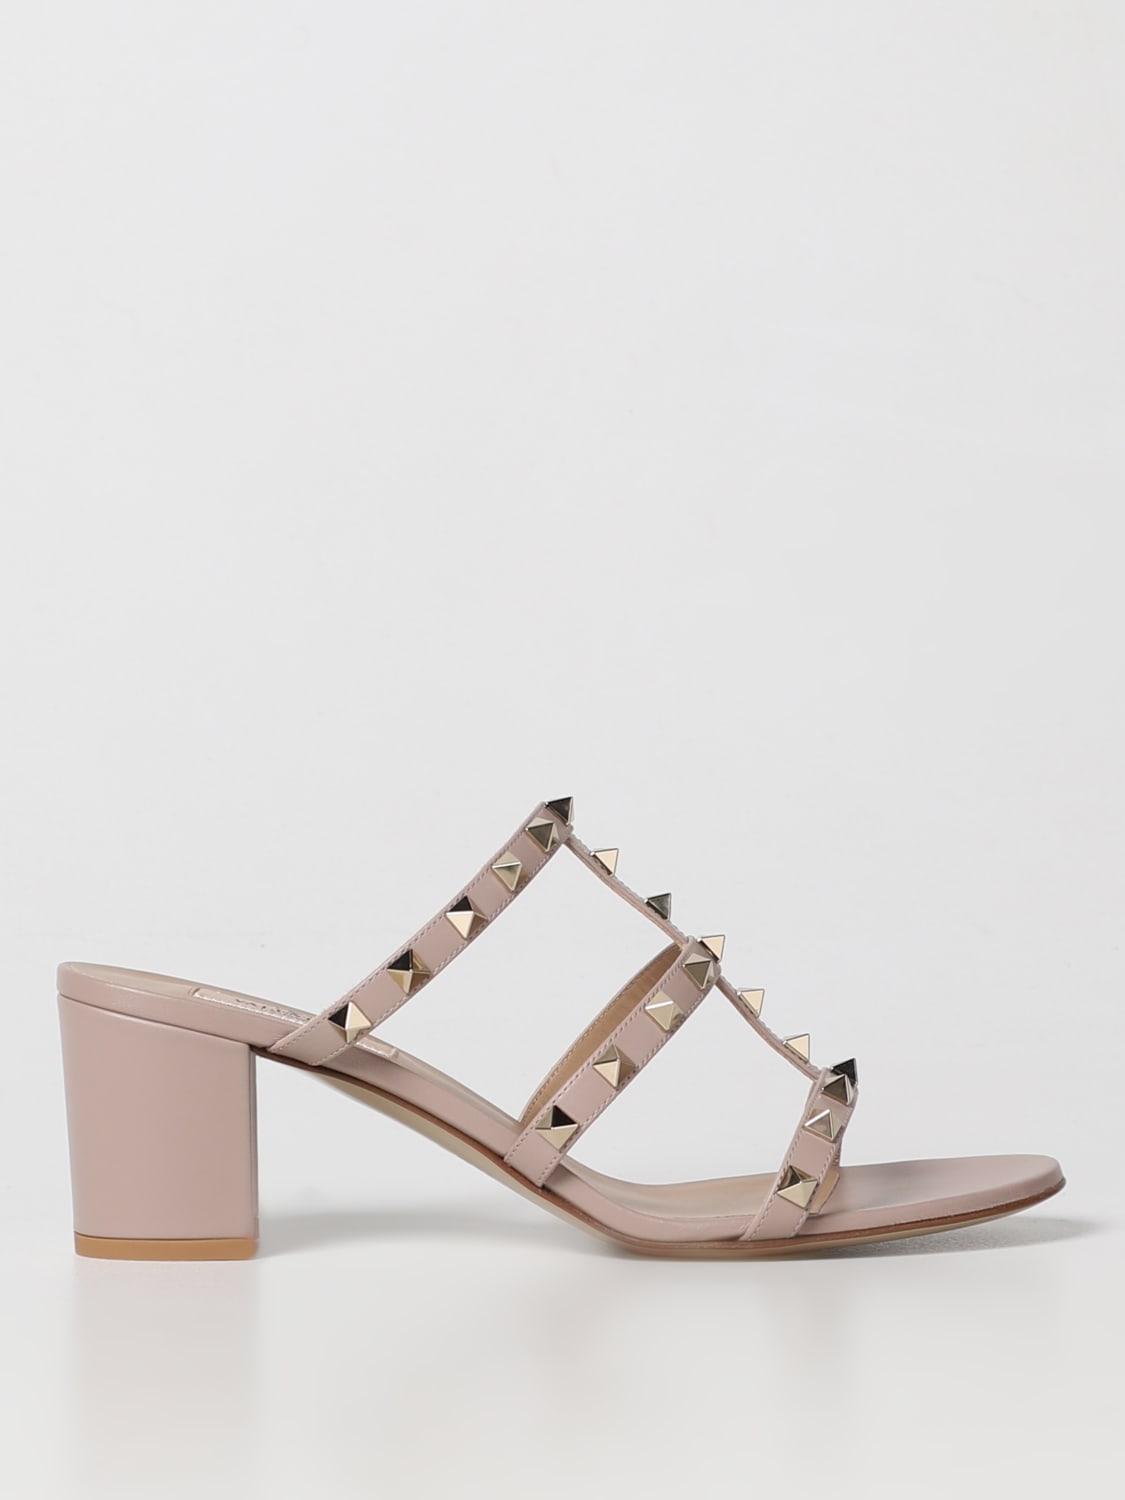 GARAVANI: Rockstud sandals in leather - Pink | Garavani heeled sandals 3W2S0C47VOD online at GIGLIO.COM